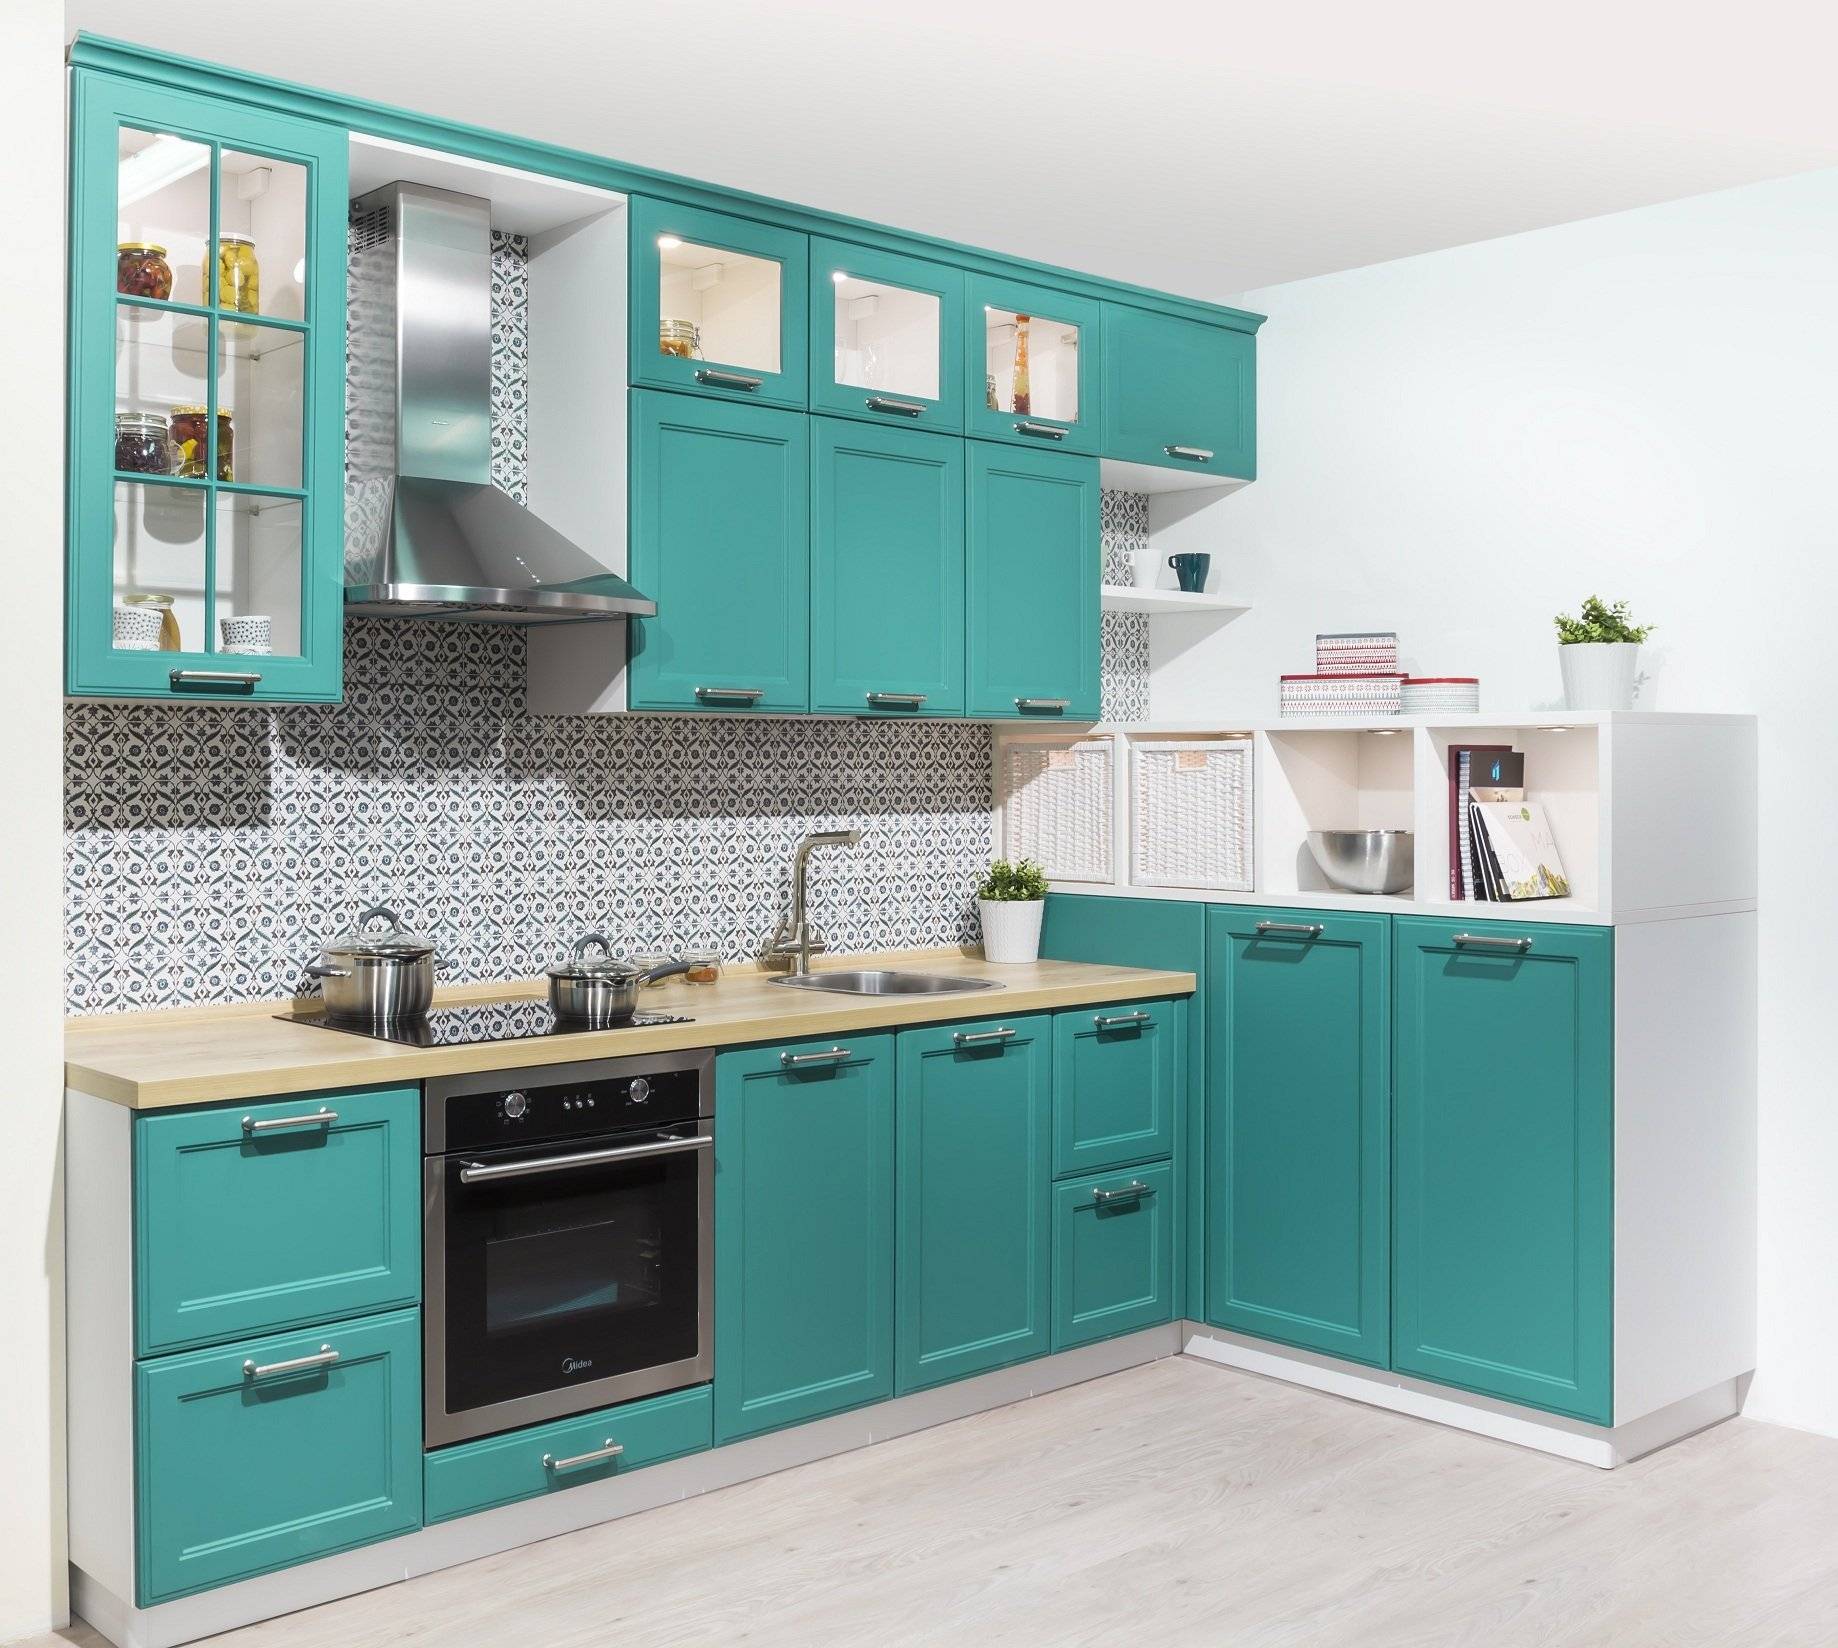 Ami-мебель кухни (38 фото): отзывы об угловых моделях белла и венеция, лиза и других